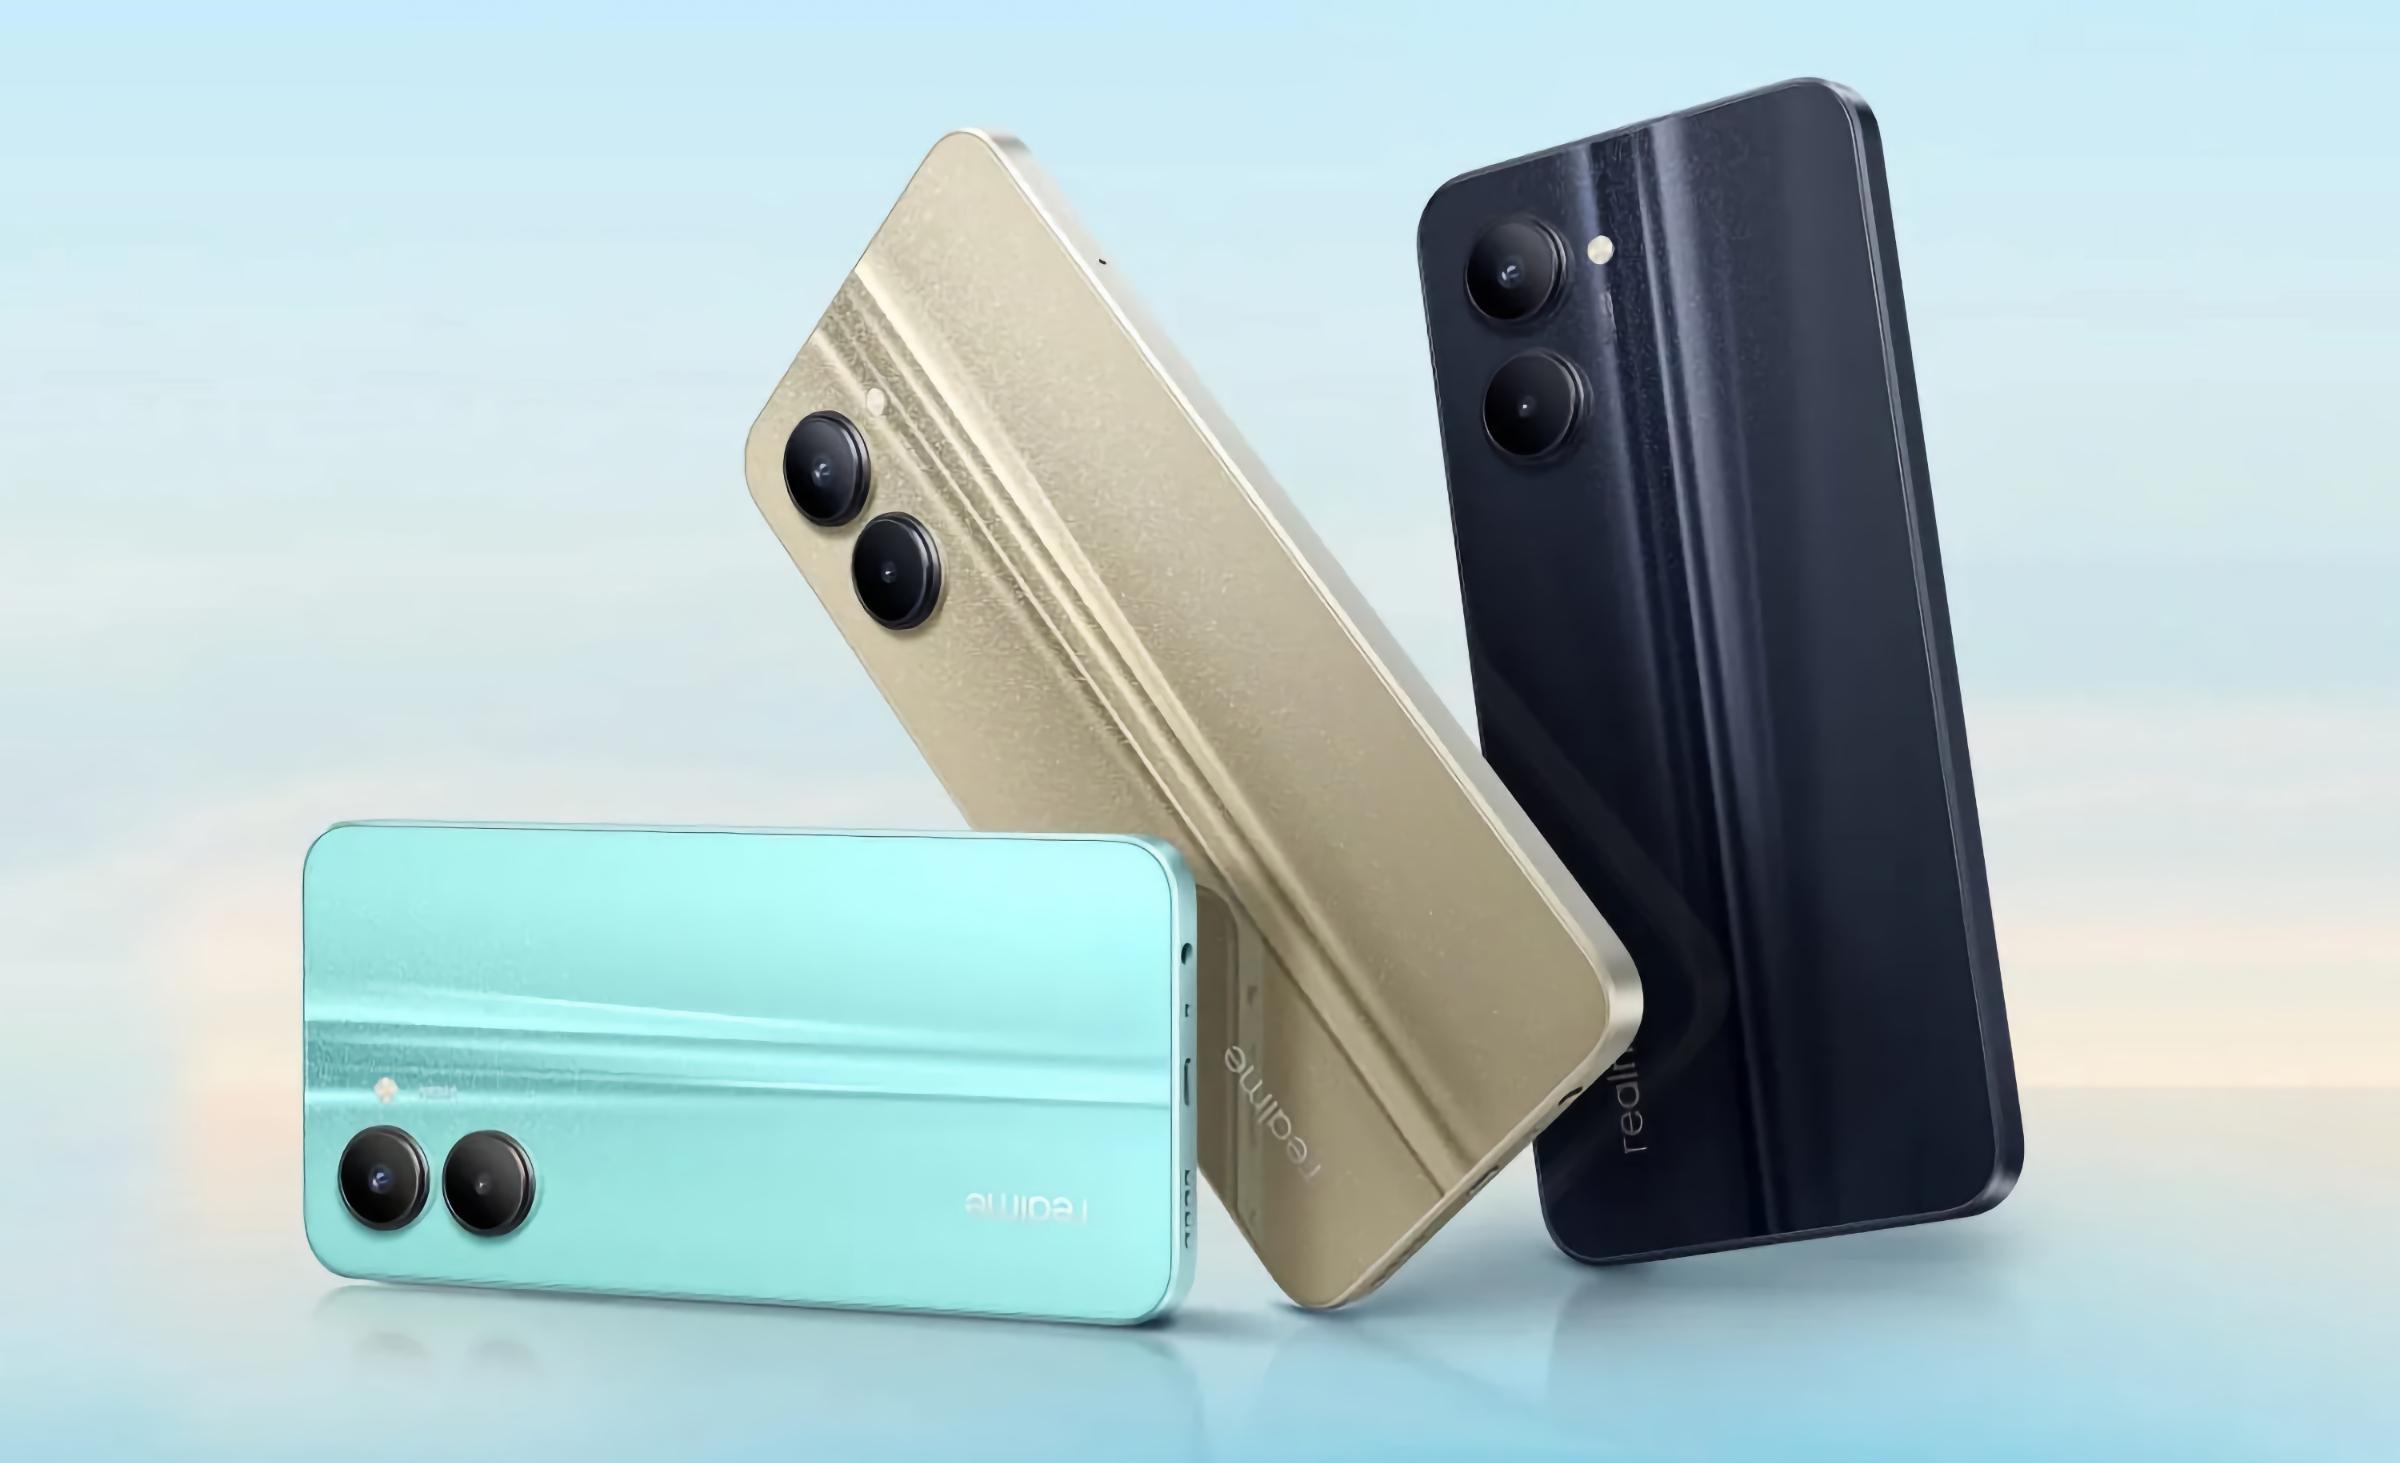 Realme se prépare à sortir un nouveau smartphone économique avec une puce MediaTek Helio G99 et une batterie de 5000 mAh.